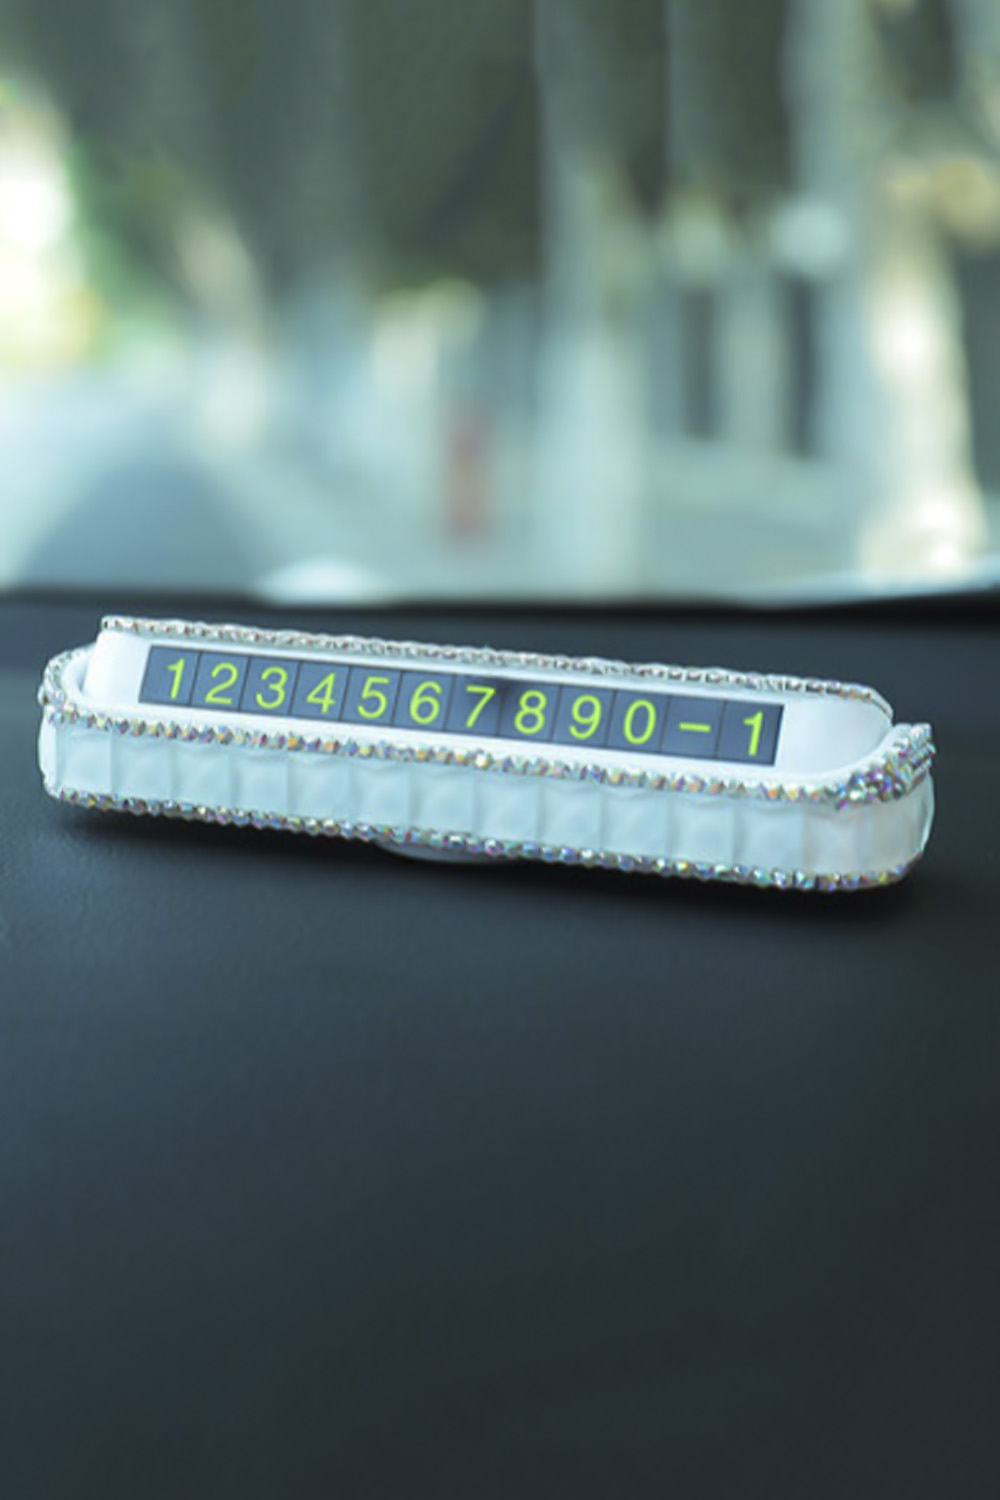 Κάρτα αριθμού προσωρινής στάθμευσης αυτοκινήτου - ΑΣΠΡΟ